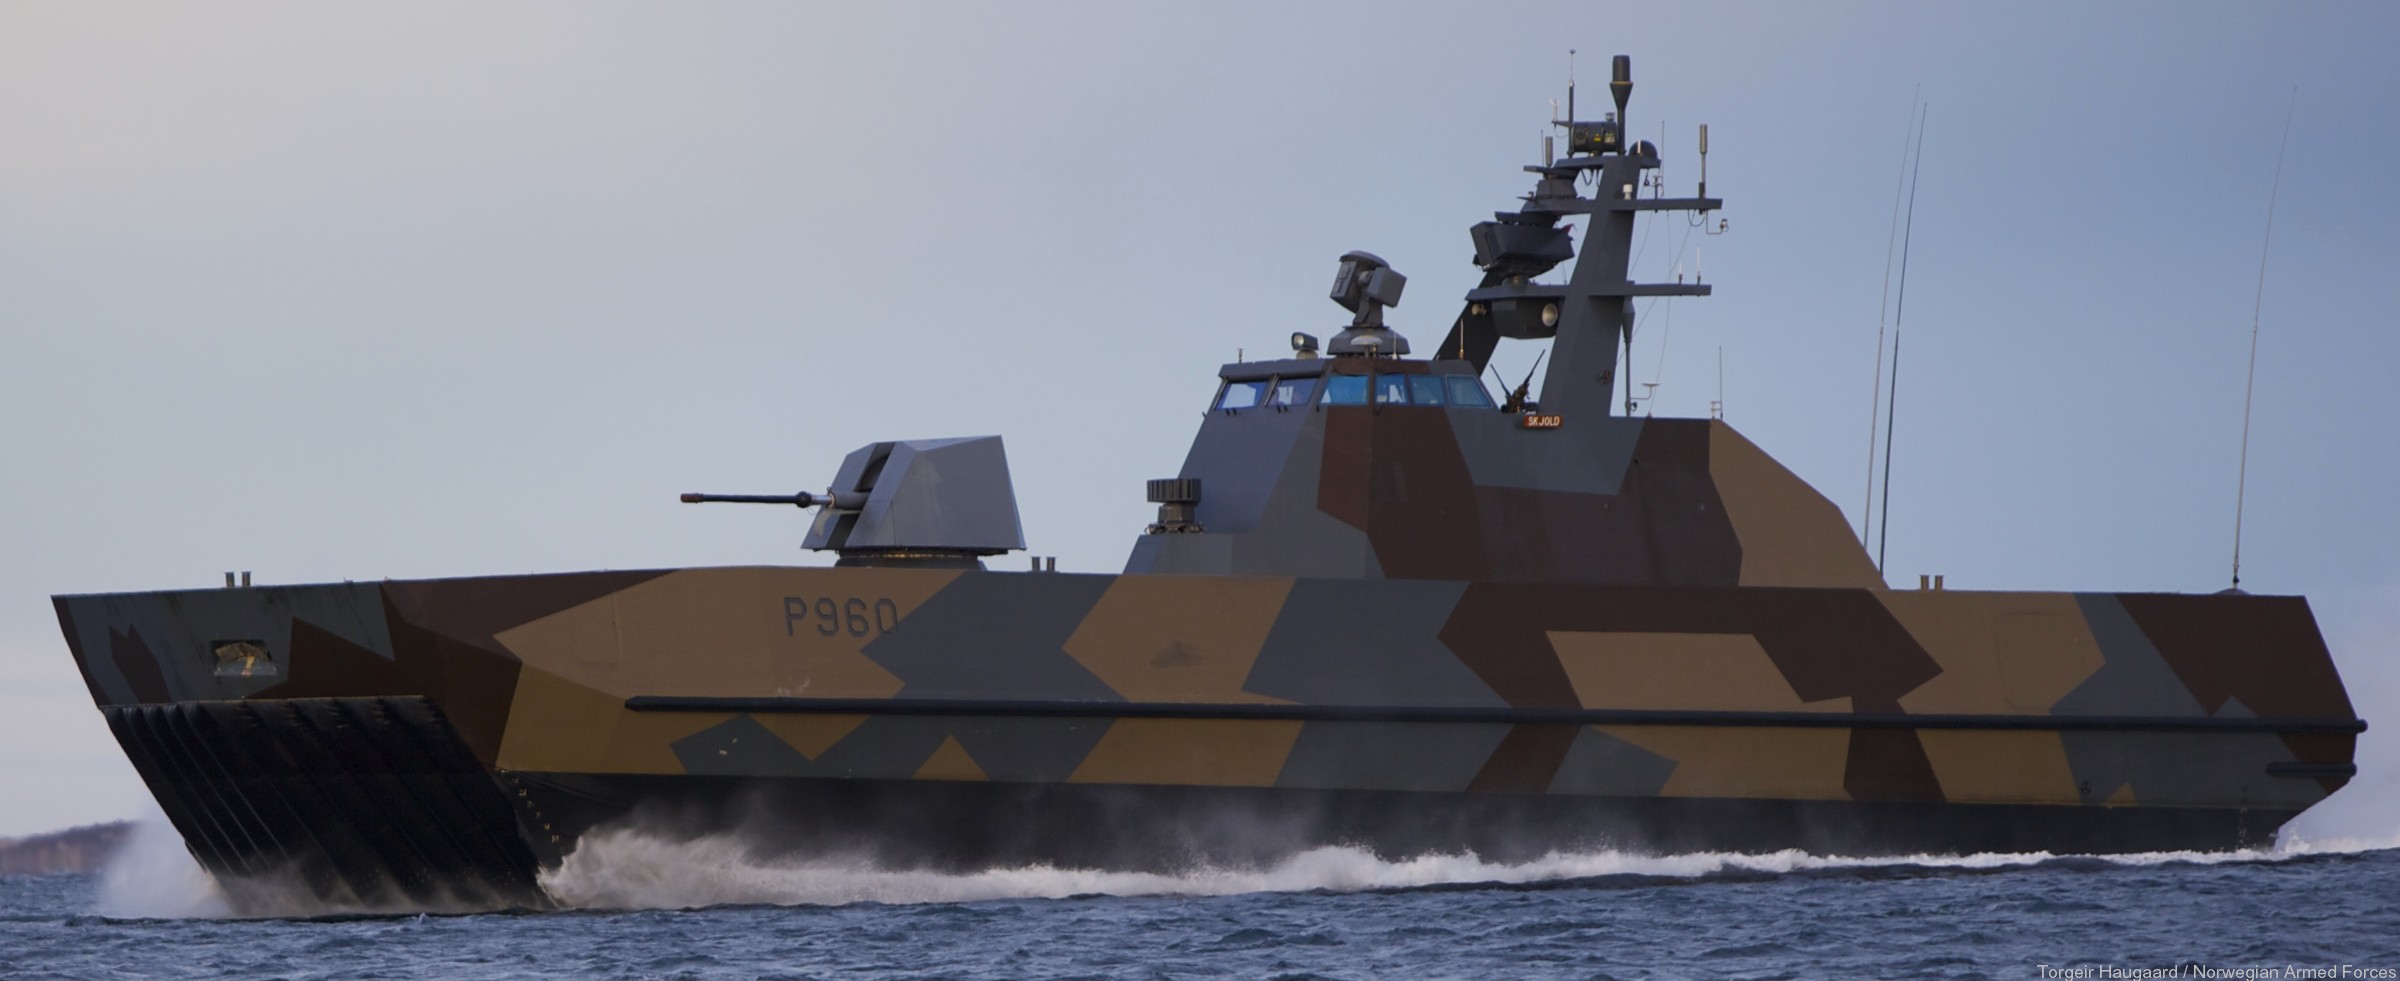 p-960 skjold hnoms knm corvette royal norwegian navy sjoforsvaret 19